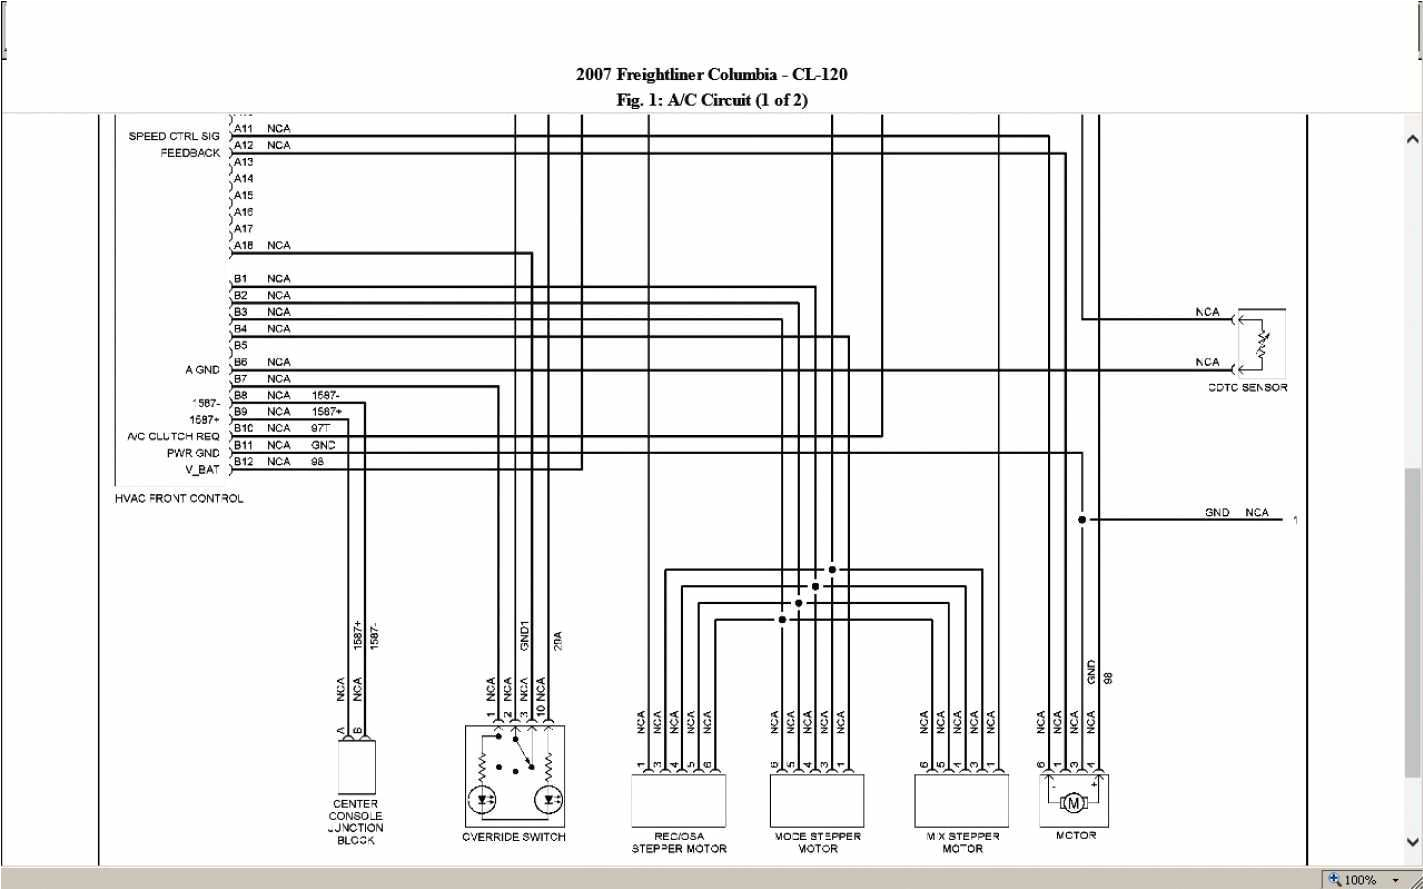 j1939 wiring diagram wiring diagram freightliner j1939 wiring diagram new wiring diagramfreightliner wiring diagram wiring diagram